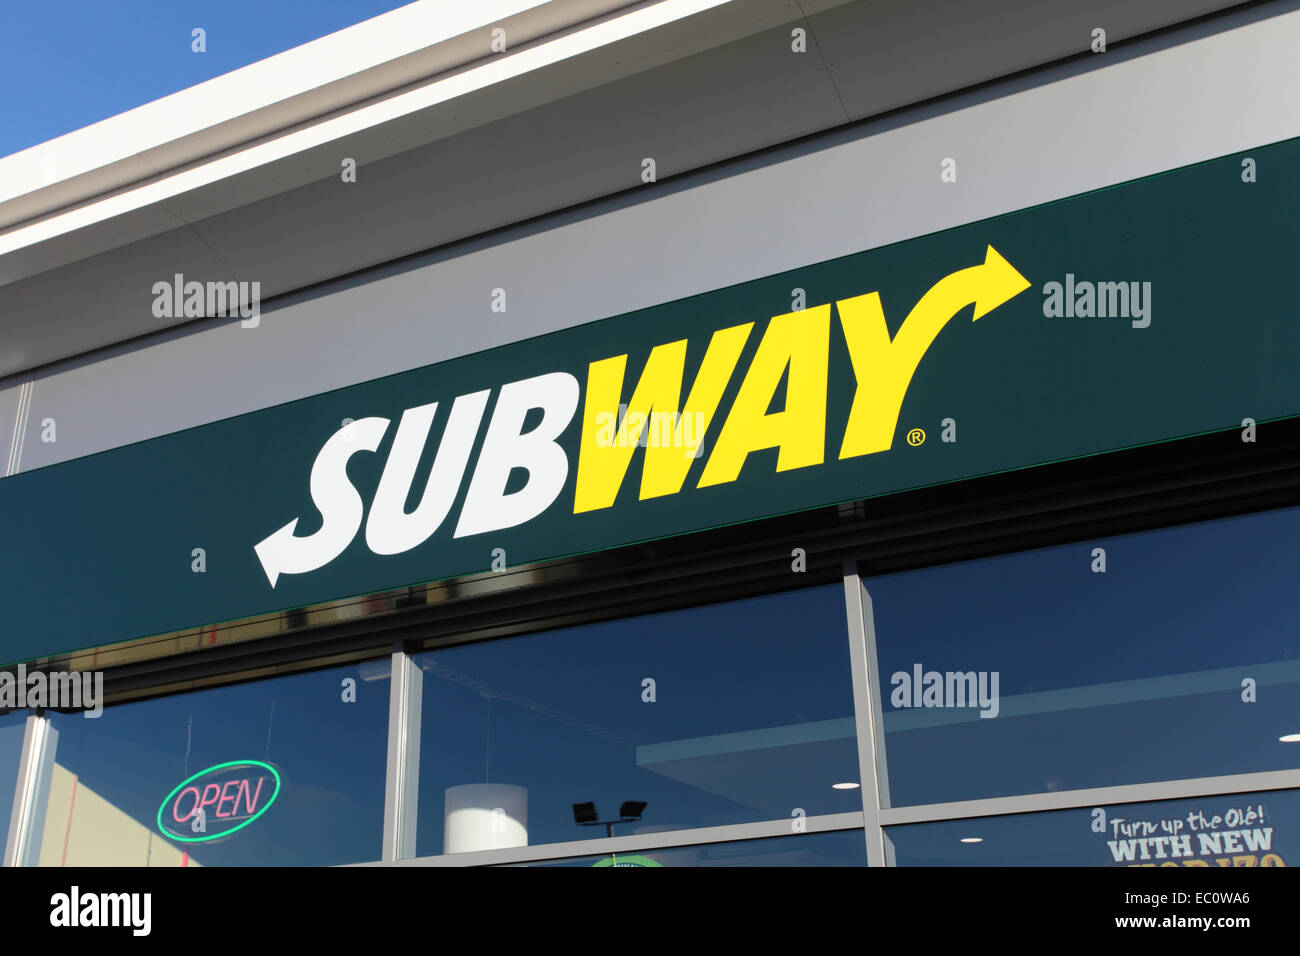 Subway takeaway shop Stock Photo